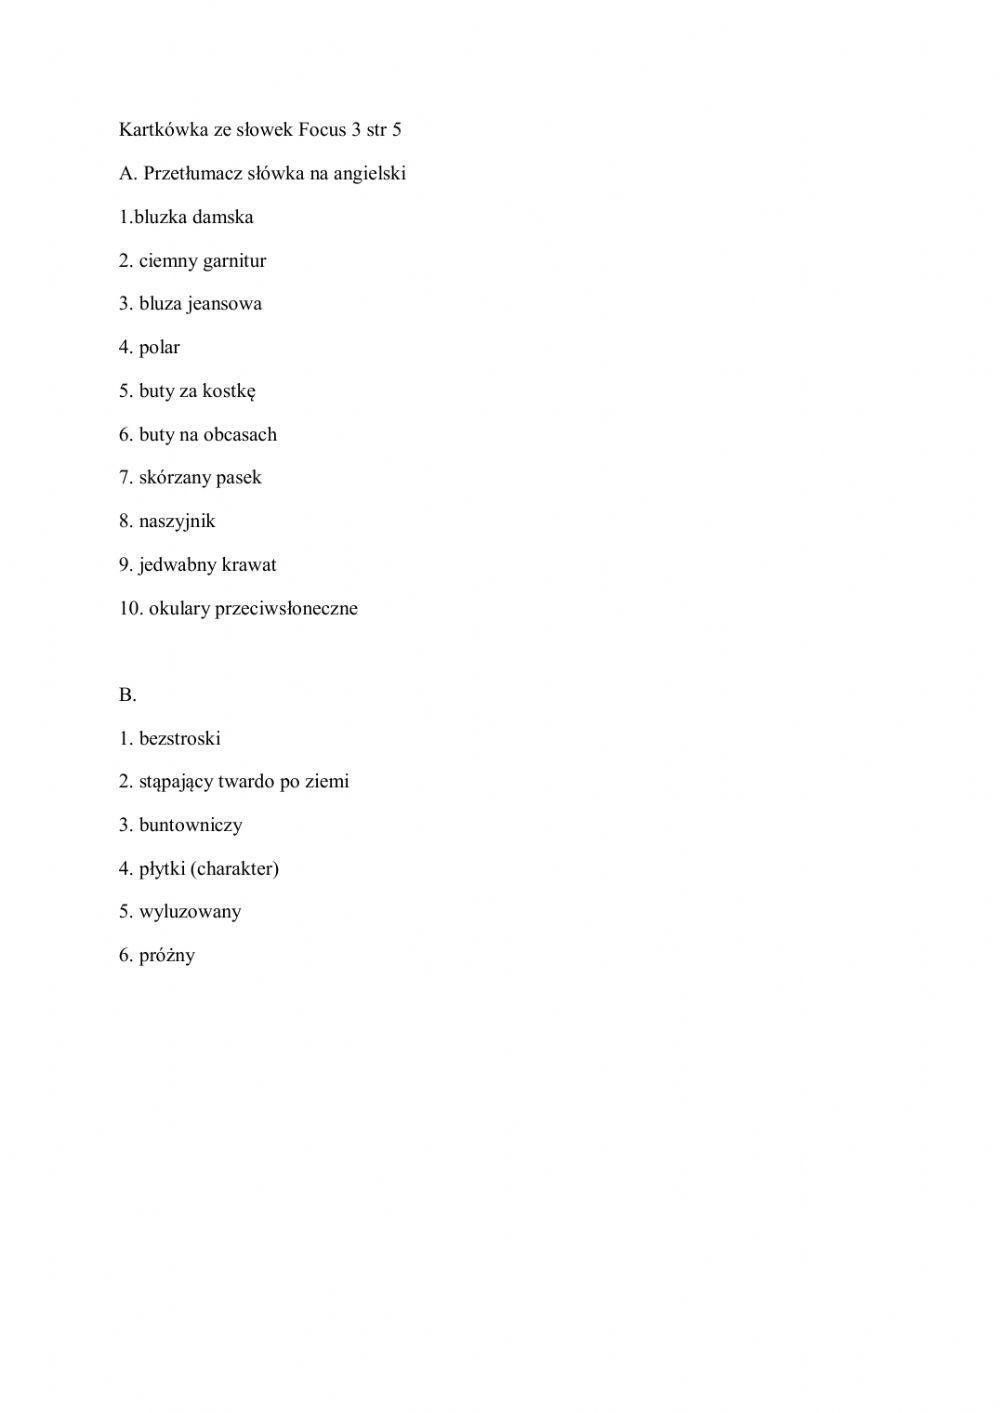 Short vocabulary test Focus 3 p 4-5